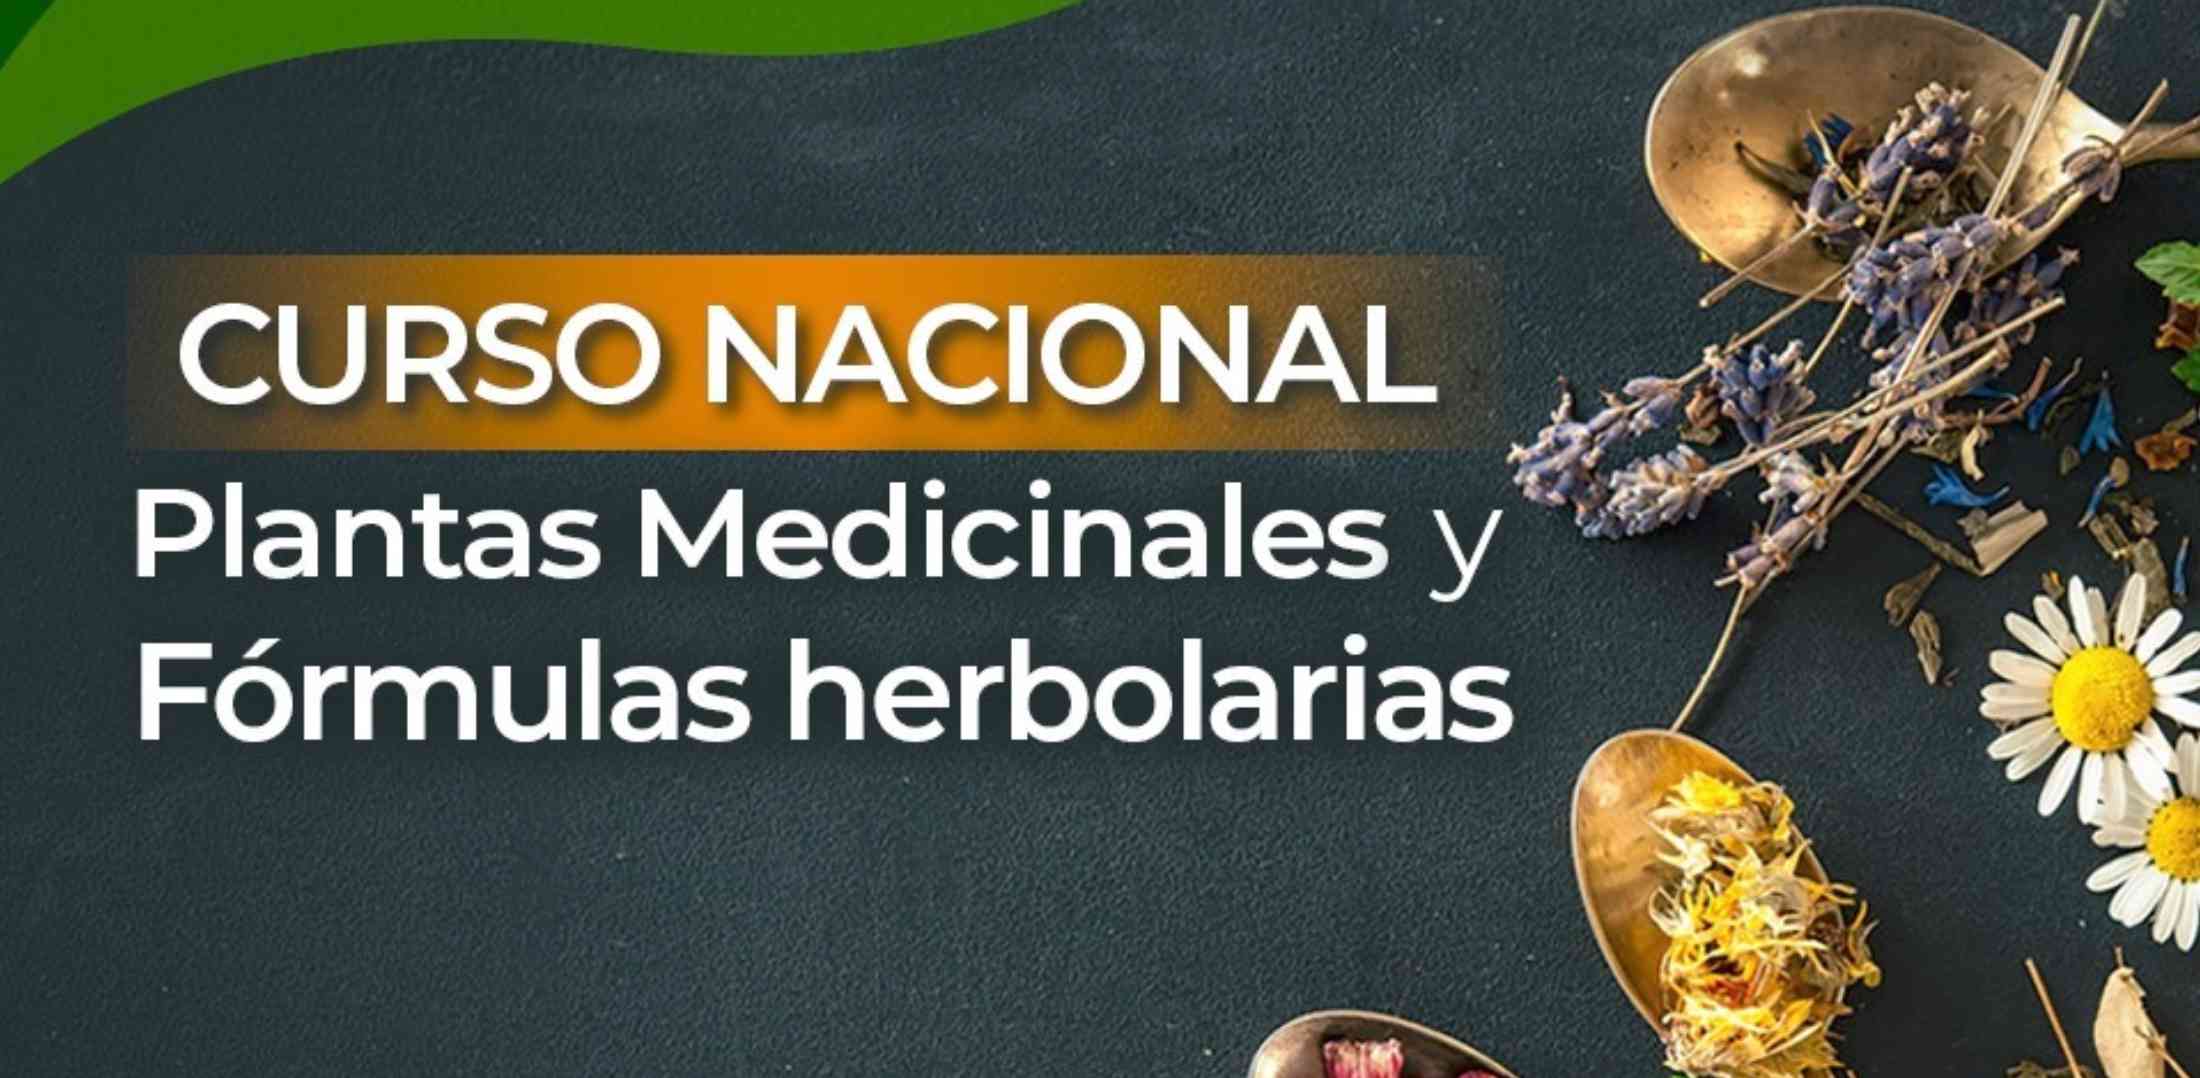 banner para CURSO NACIONAL DE PLANTAS MEDICINALES